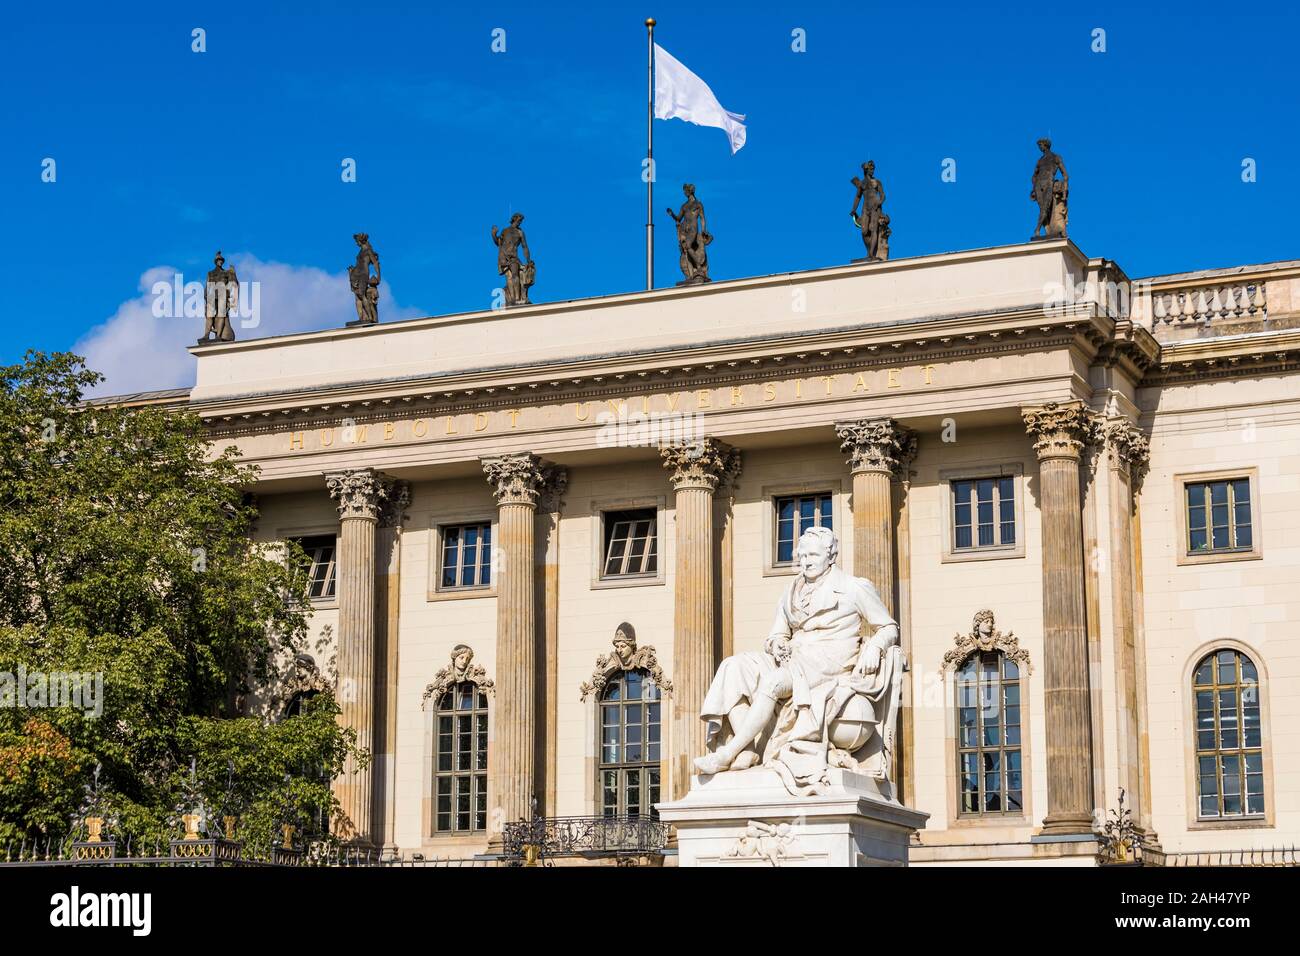 Alemania, Berlín Mitte, Unter den Linden, la Universidad Humboldt de Berlín y Alexander von Humboldt estatua Foto de stock